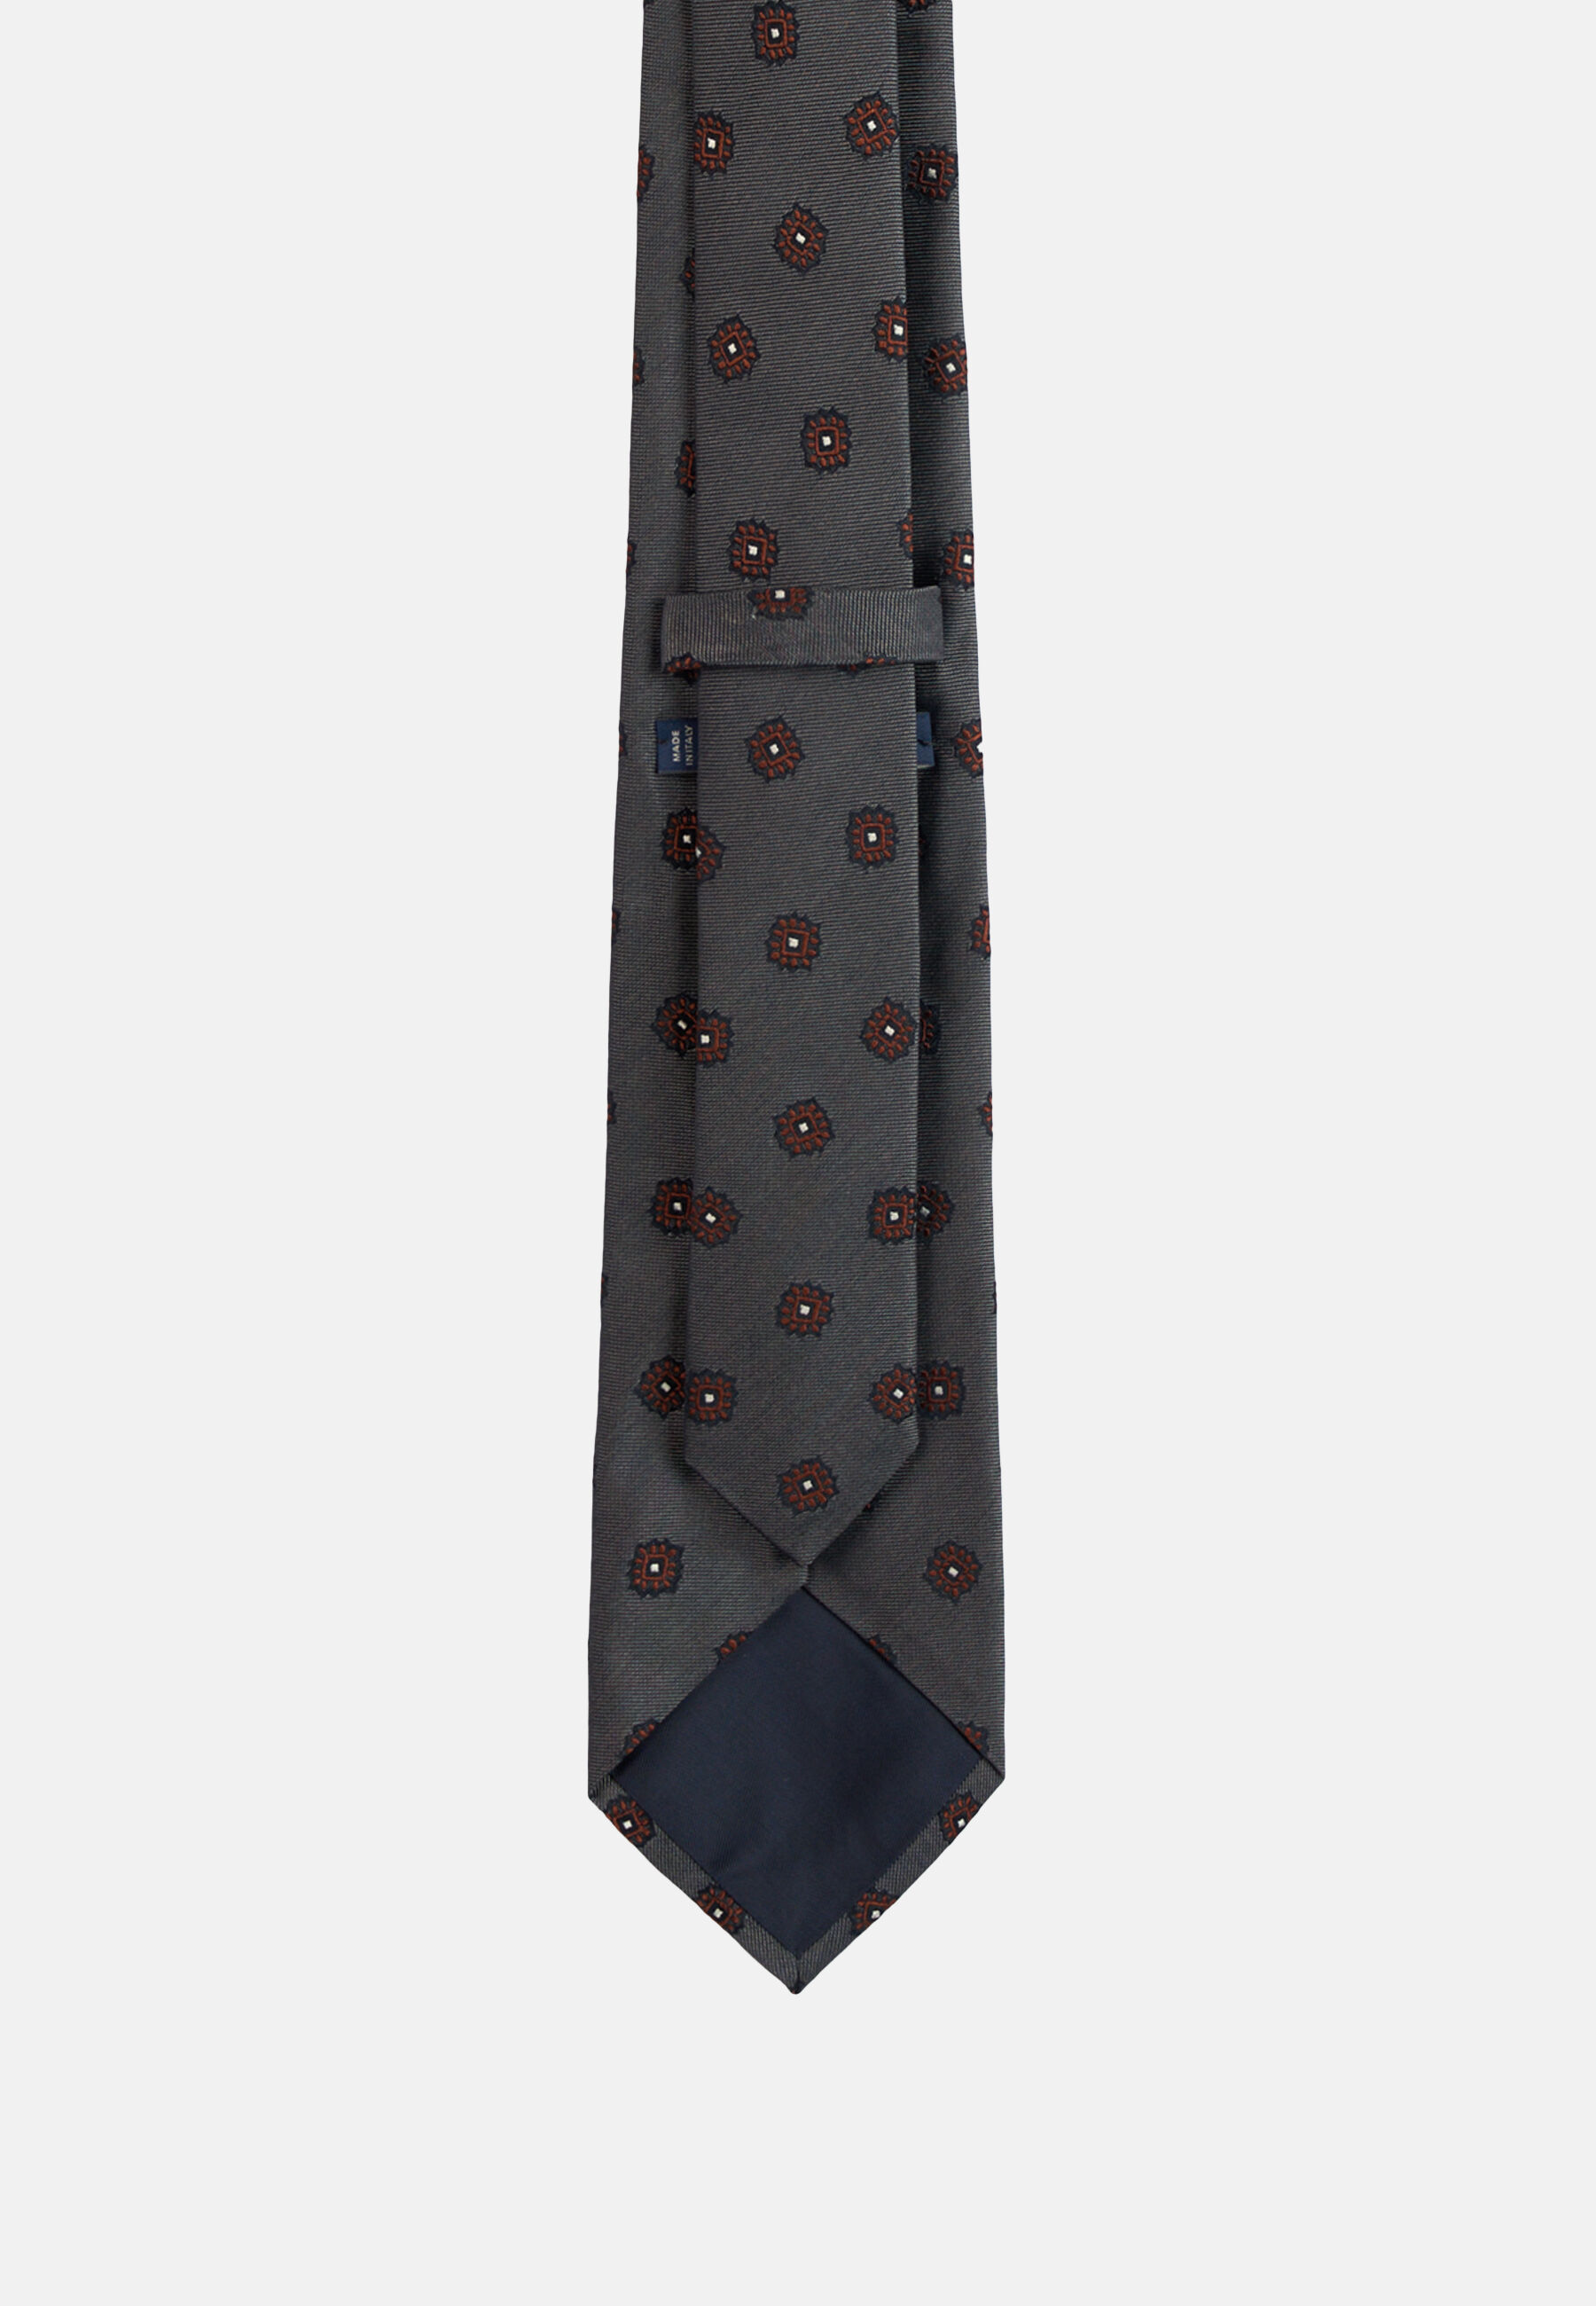 Cravatta Micro Motivo In Seta Boggi Uomo Accessori Cravatte e accessori Cravatte 